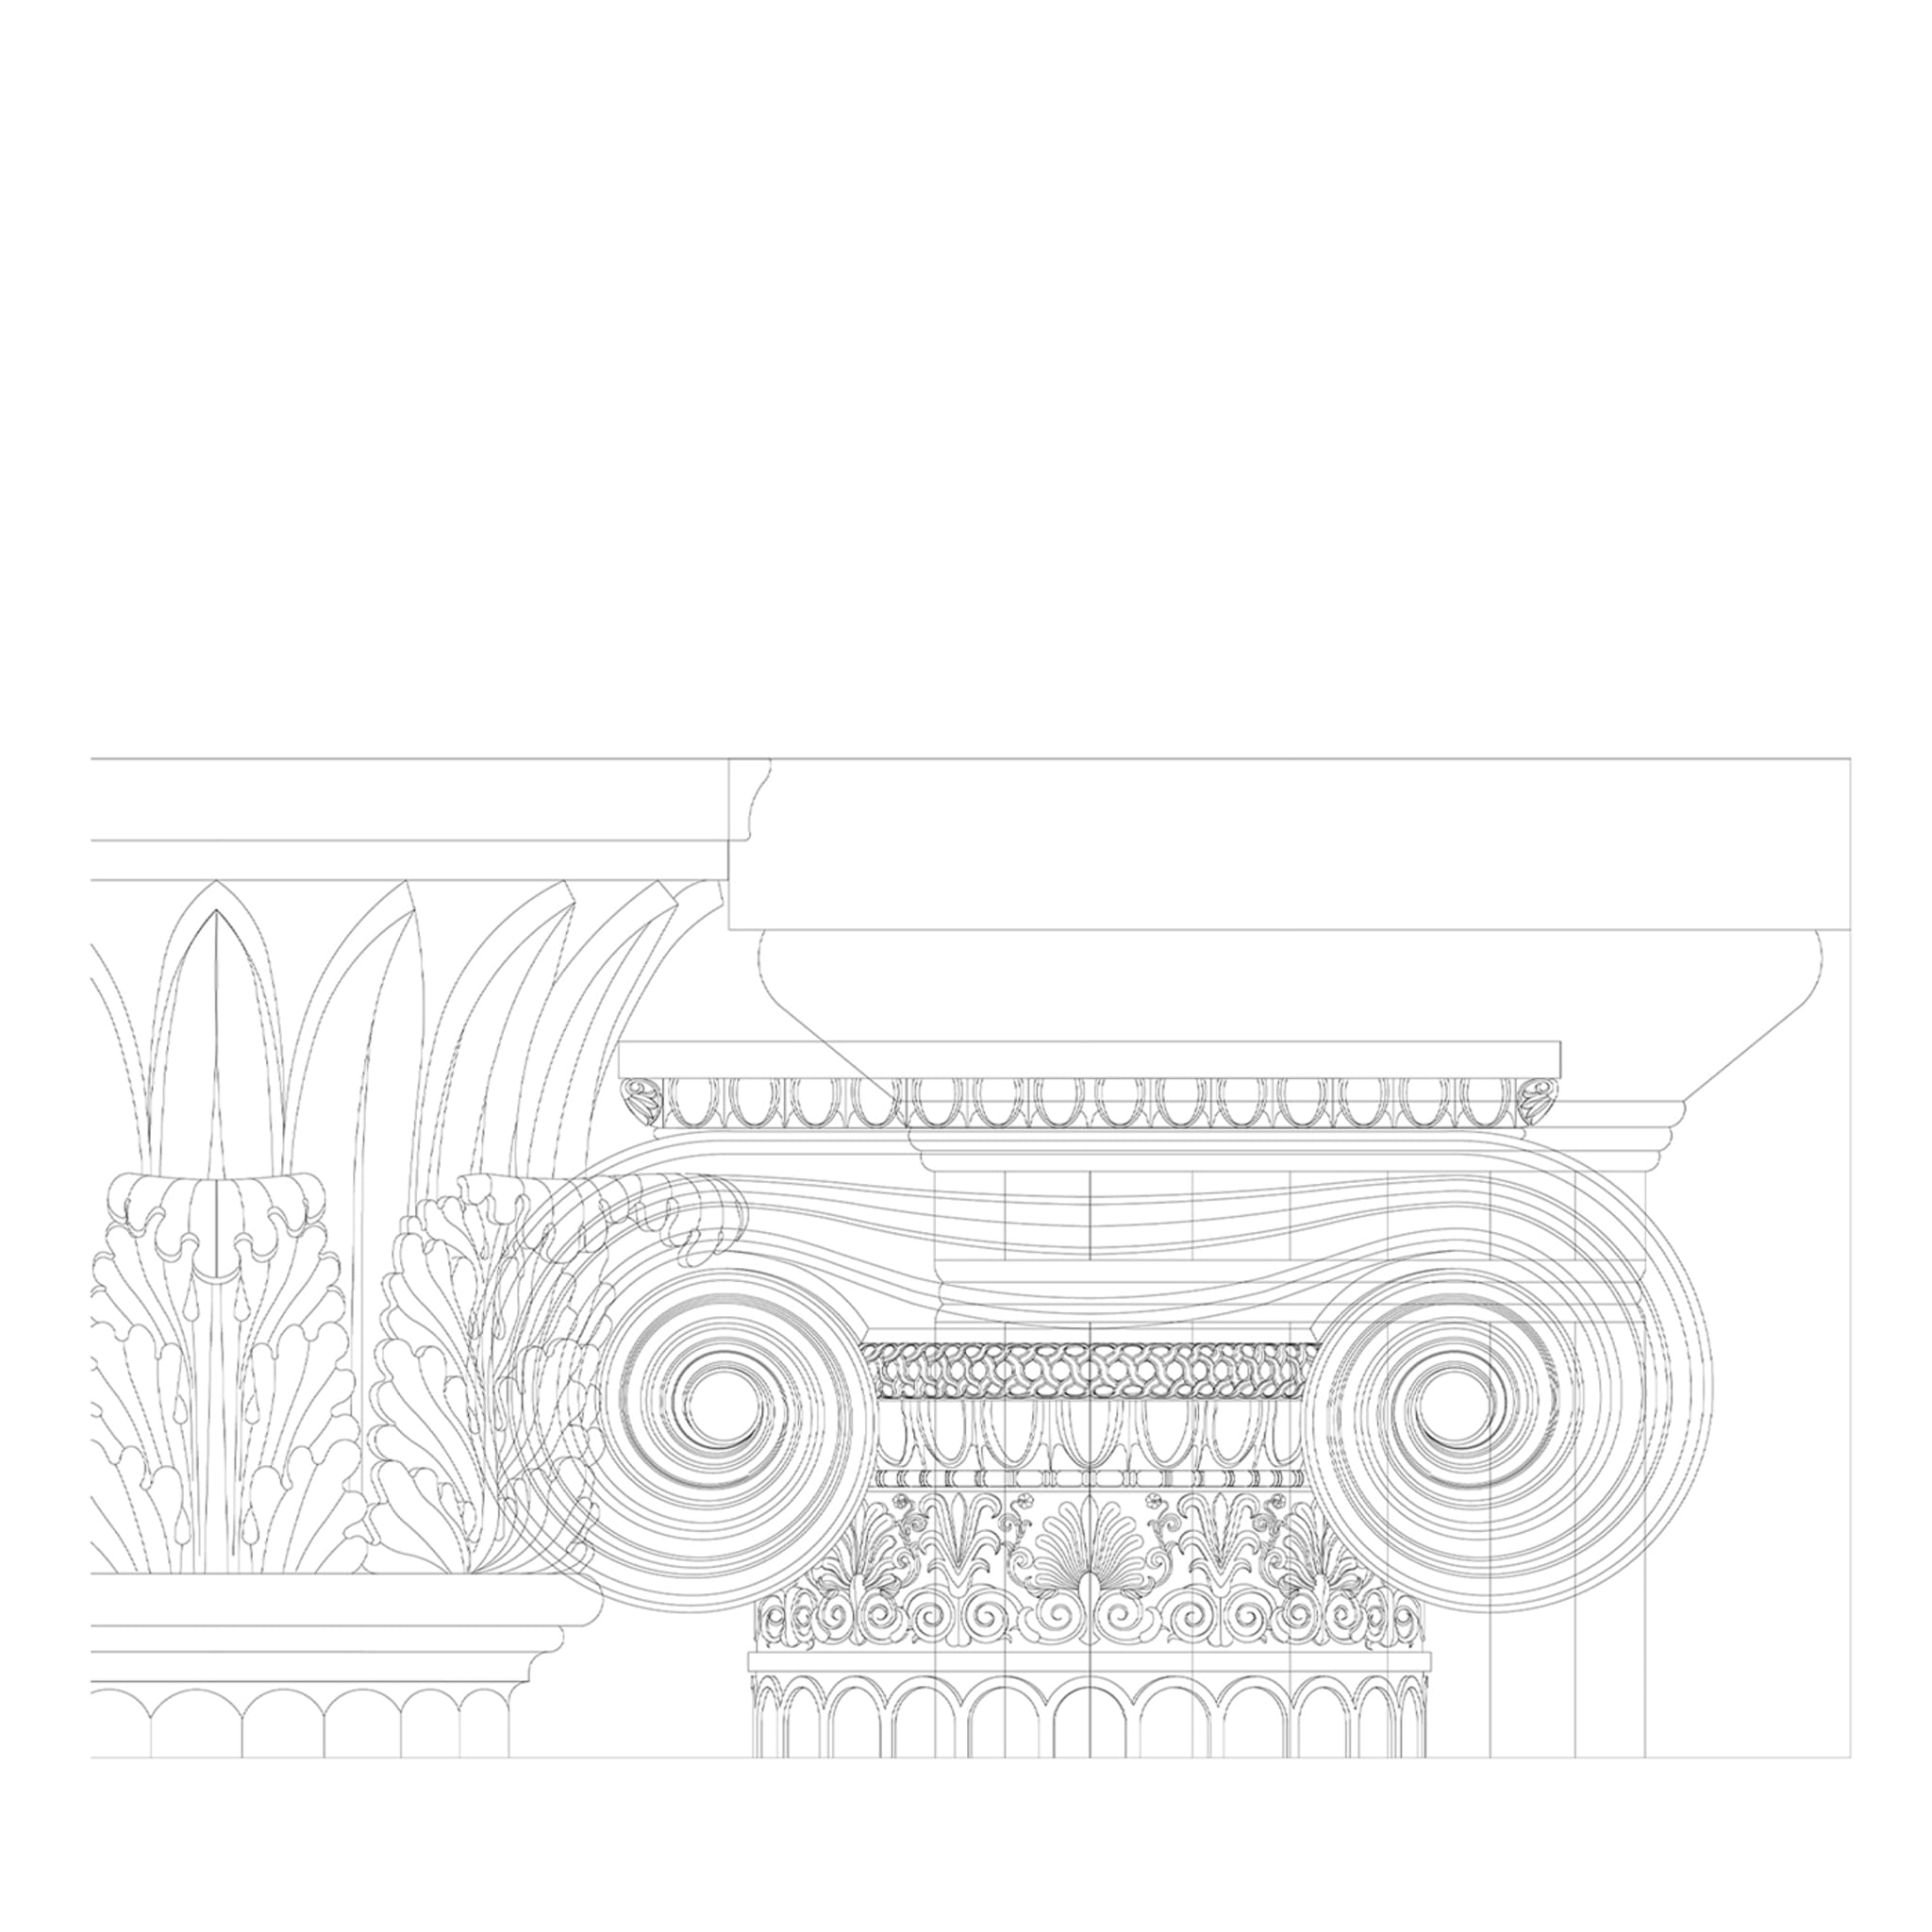 Layers n.1 Wallpaper - Main view